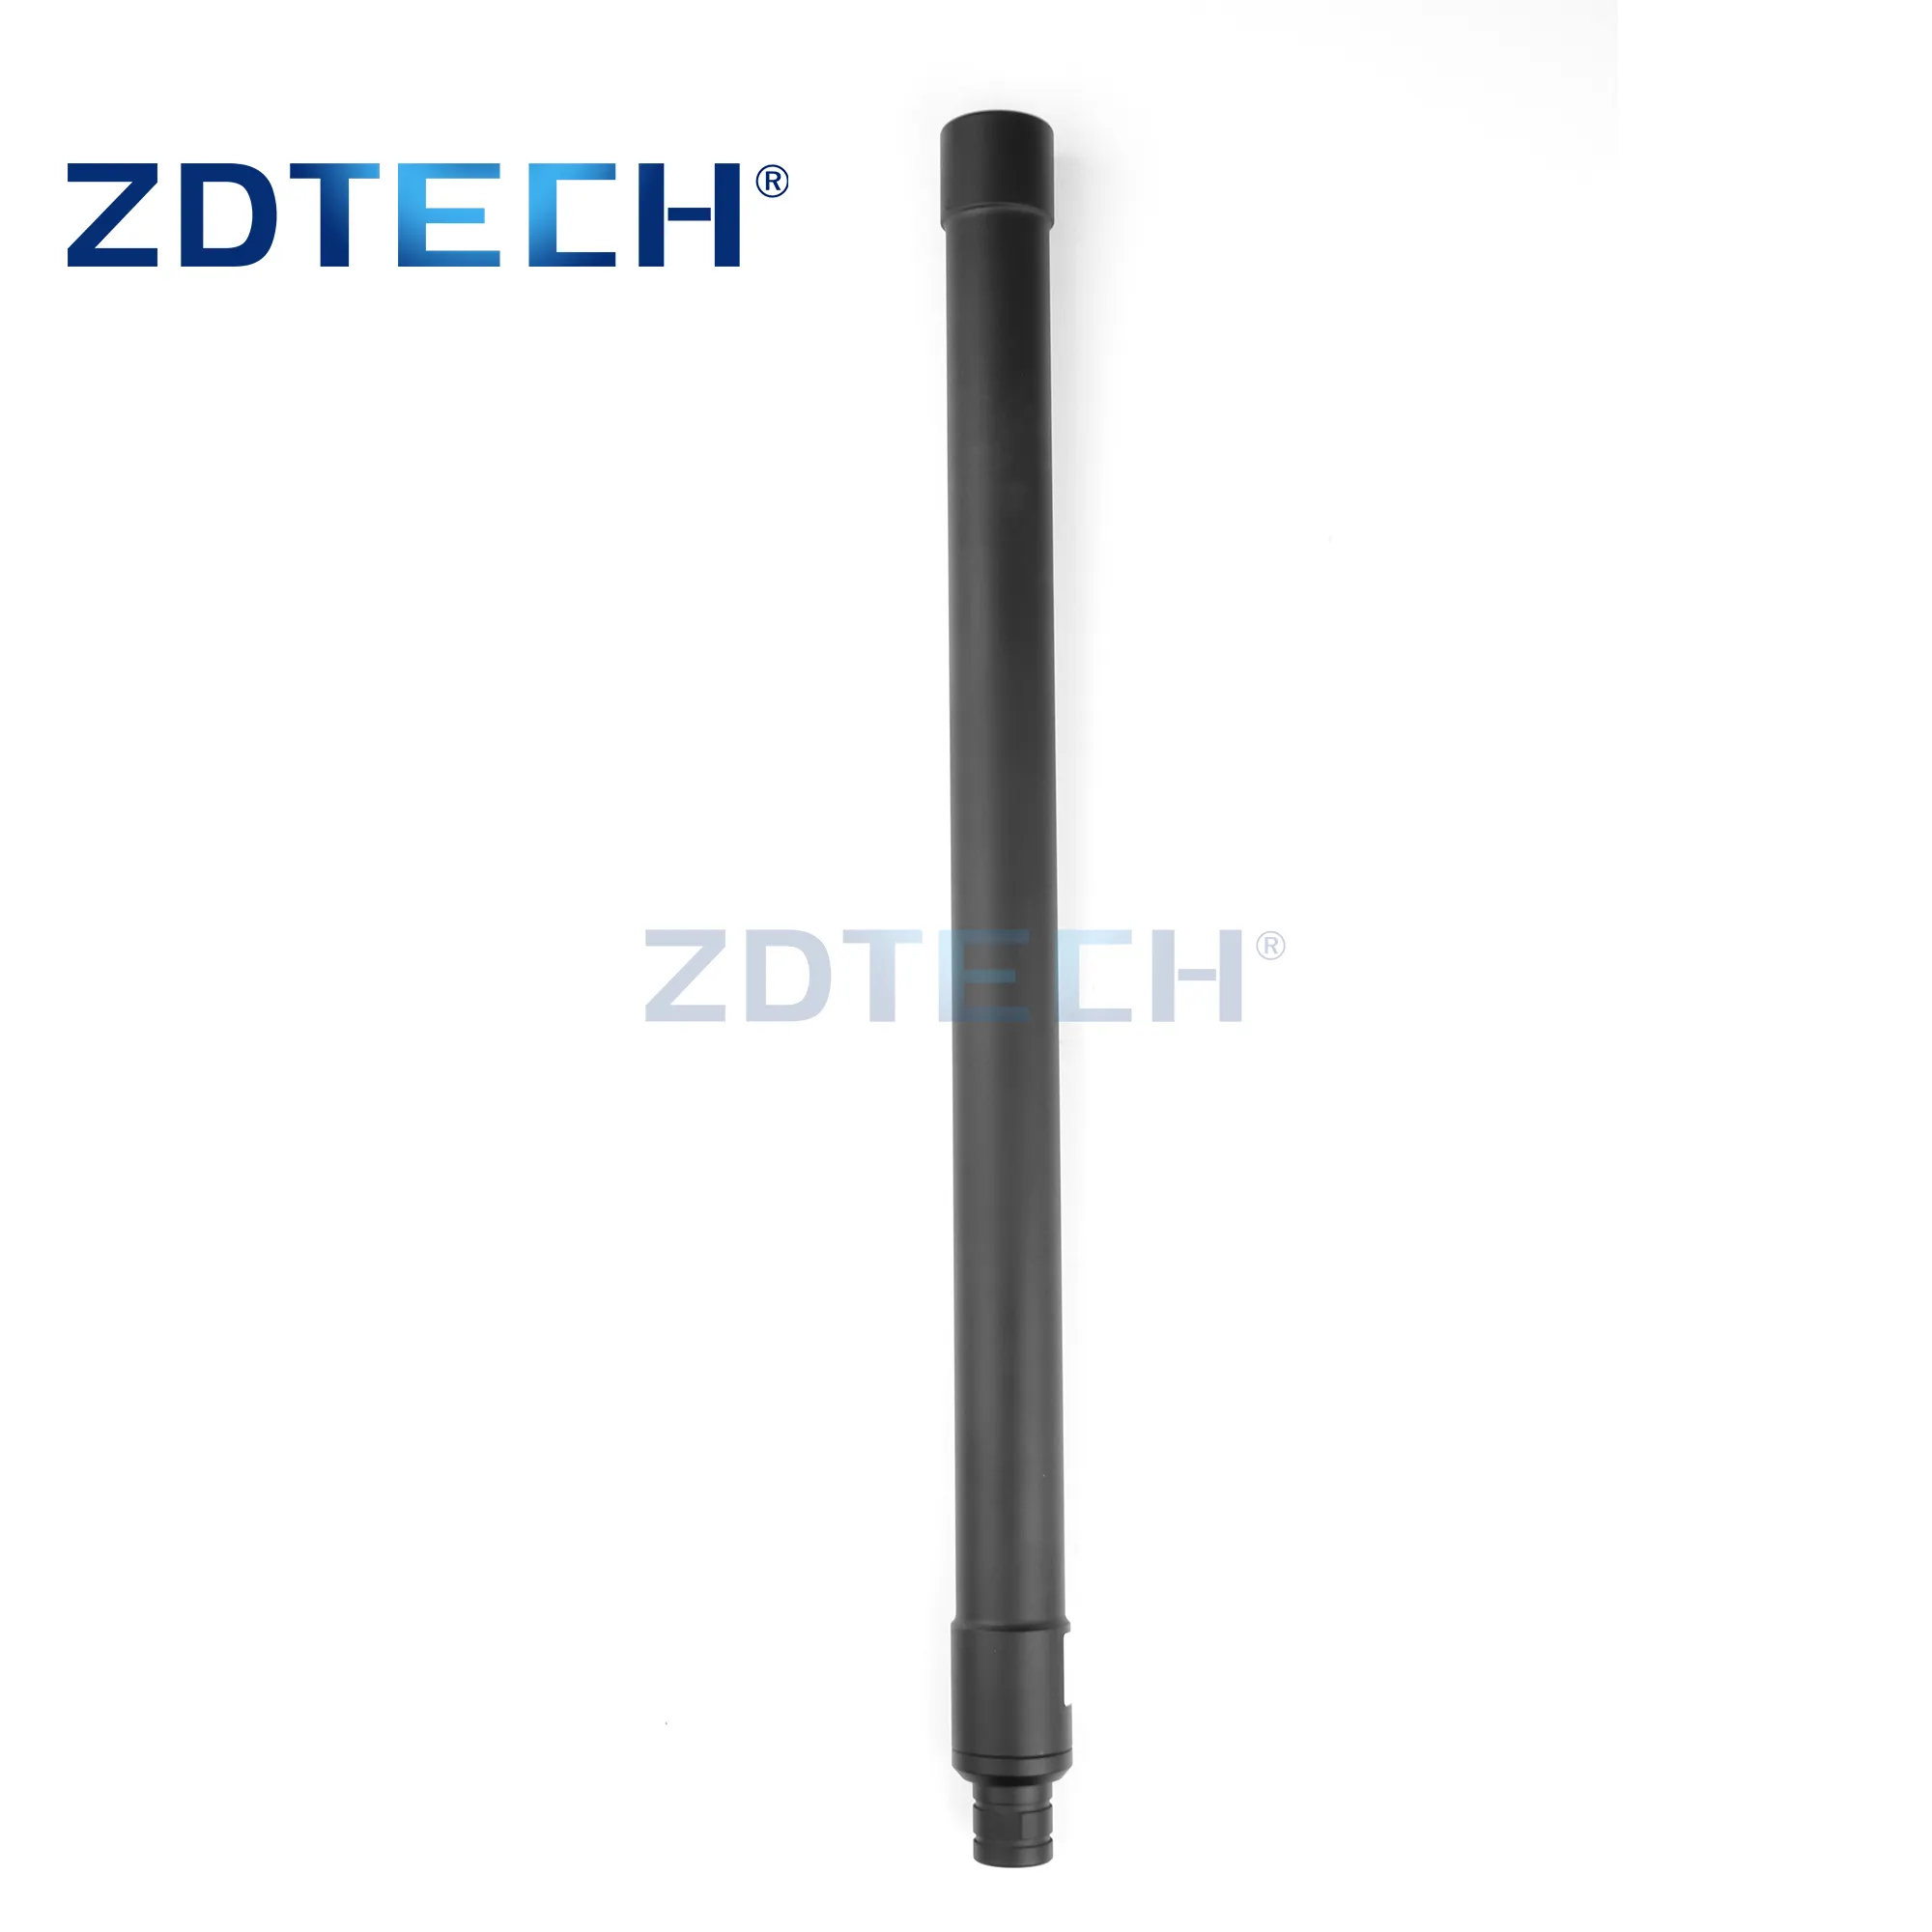 Antena de fibra de vidrio impermeable para exteriores, 300-500MHz, VHF, UHF